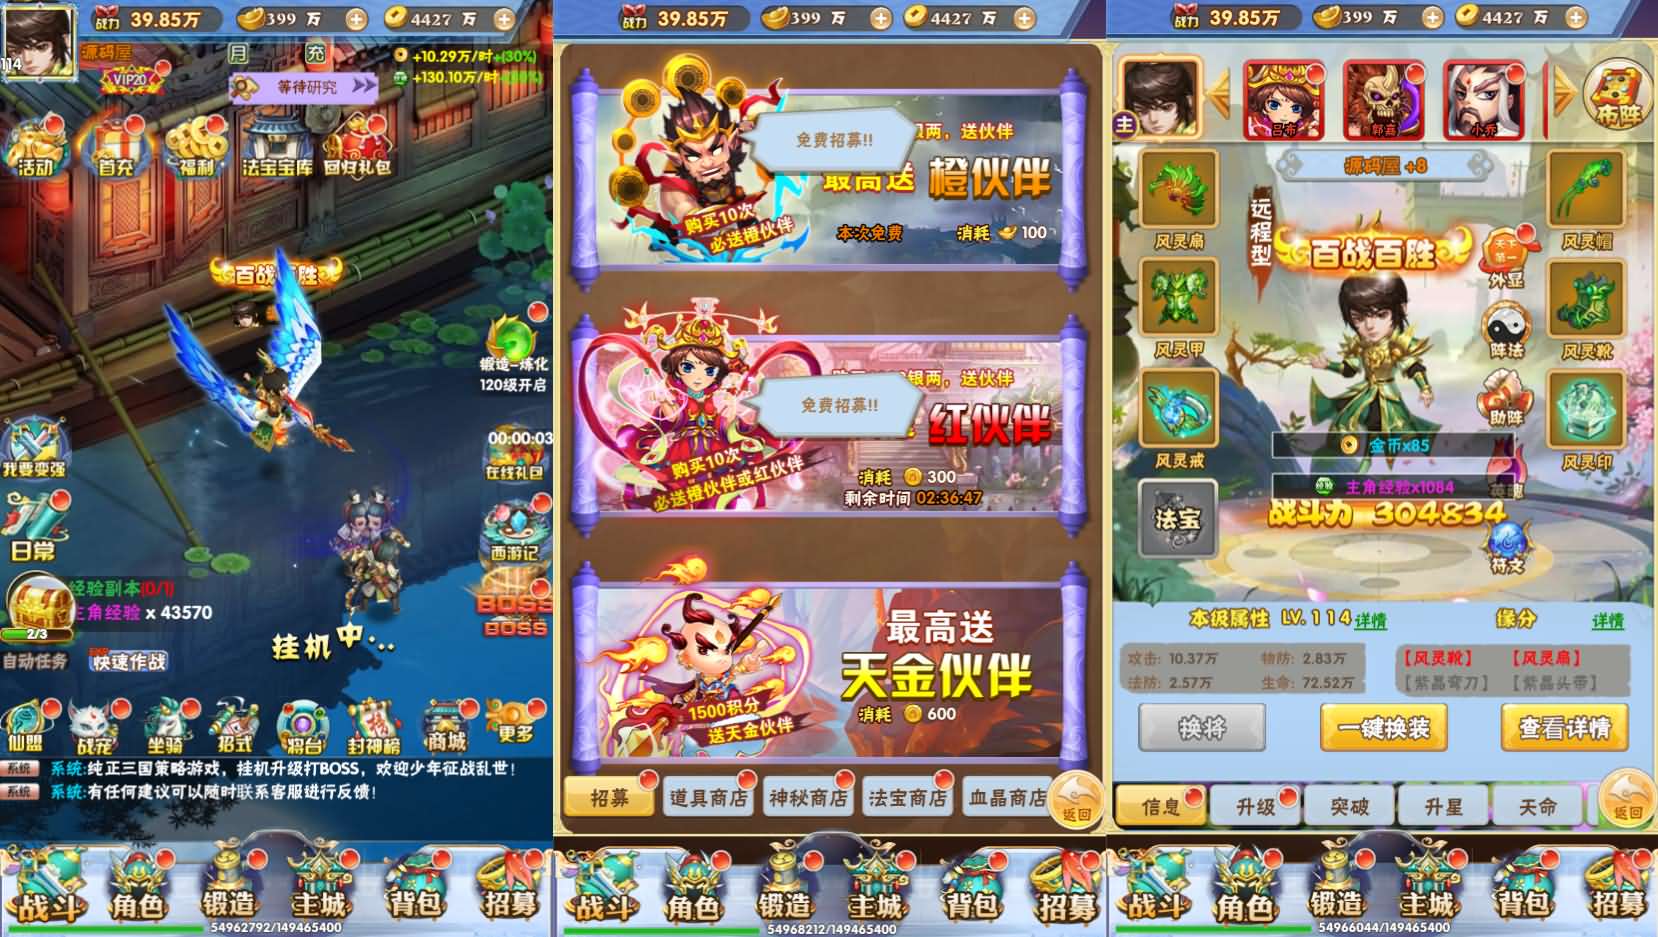 Game H5【Cửu Kiếm OL H5-China】Server Win + Nhiều Server + GM Tool + Hướng Dẫn